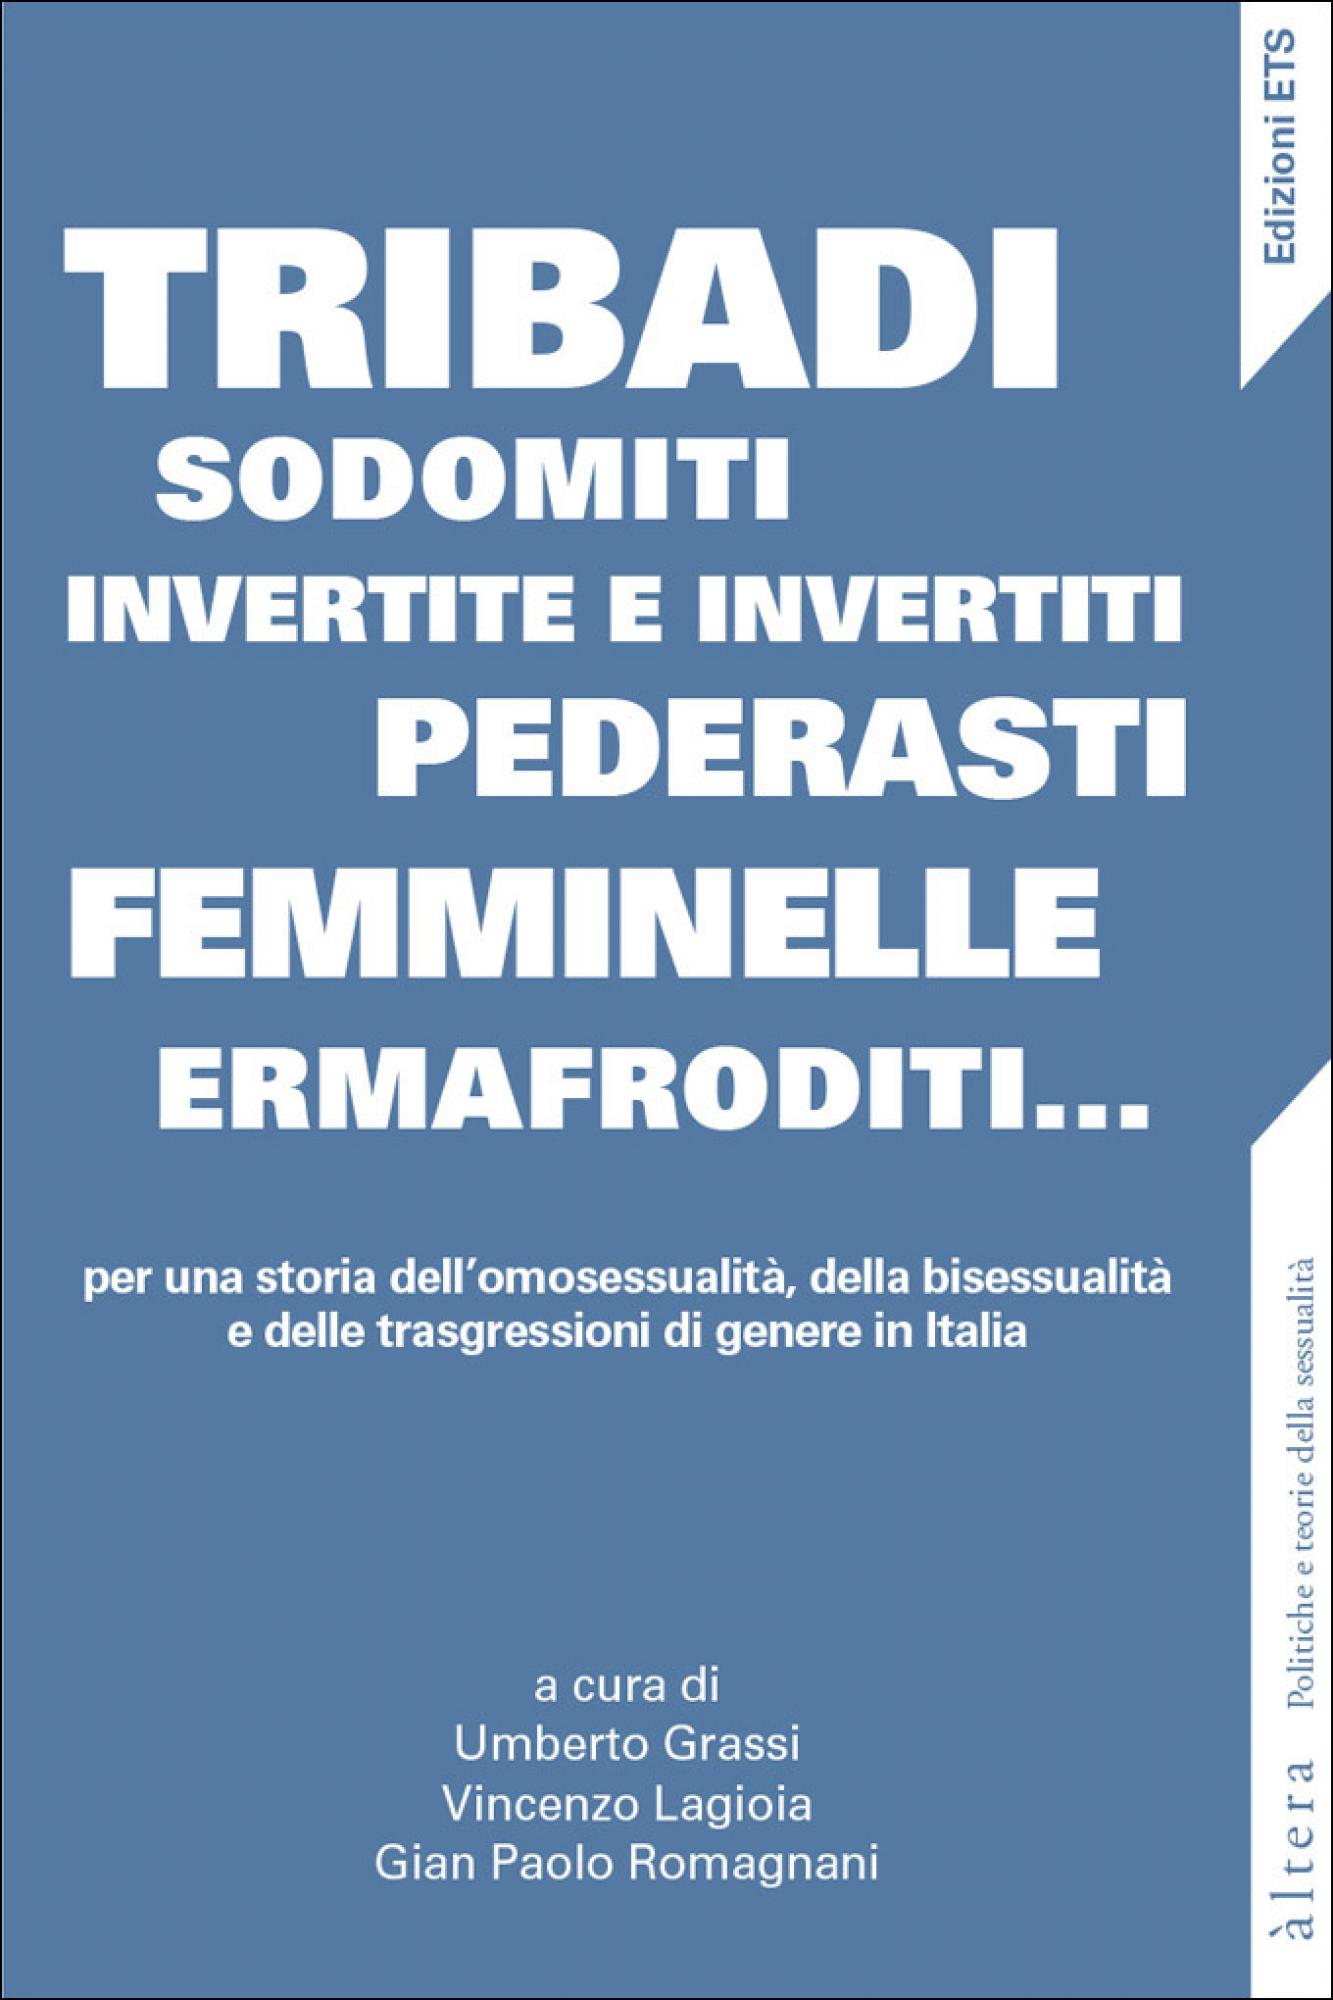 Tribadi, sodomiti, invertite e invertiti, pederasti, femminelle, ermafroditi... per una storia dell'omosessualità, della bisessualità e delle trasgressioni di genere in Italia